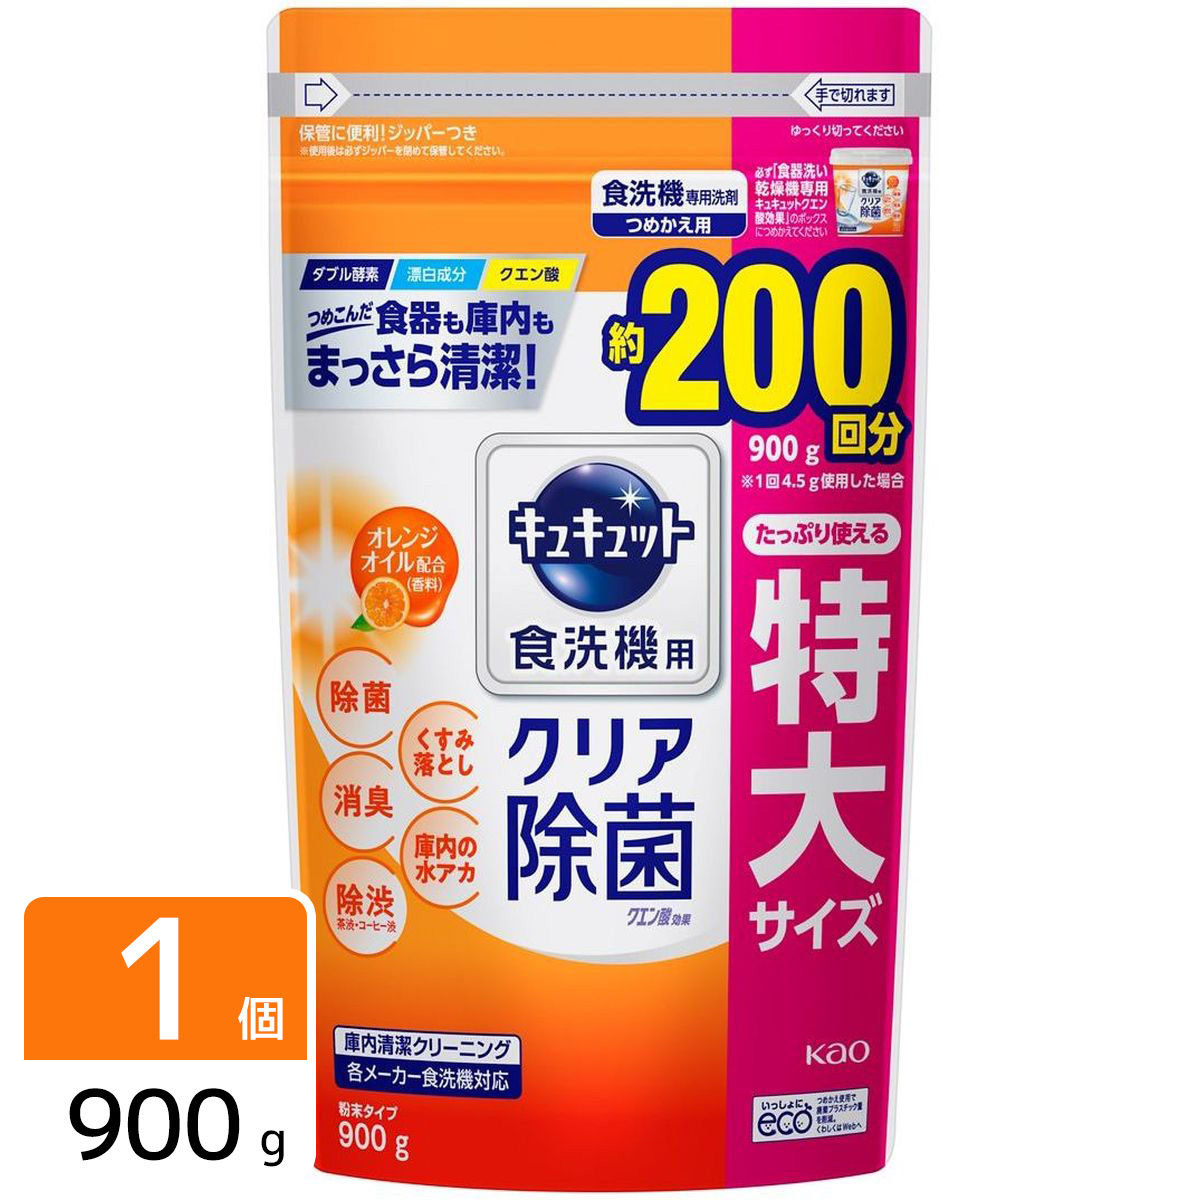 食器洗い乾燥機専用 キュキュットクエン酸効果 オレンジオイル配合 つめかえ用 900g